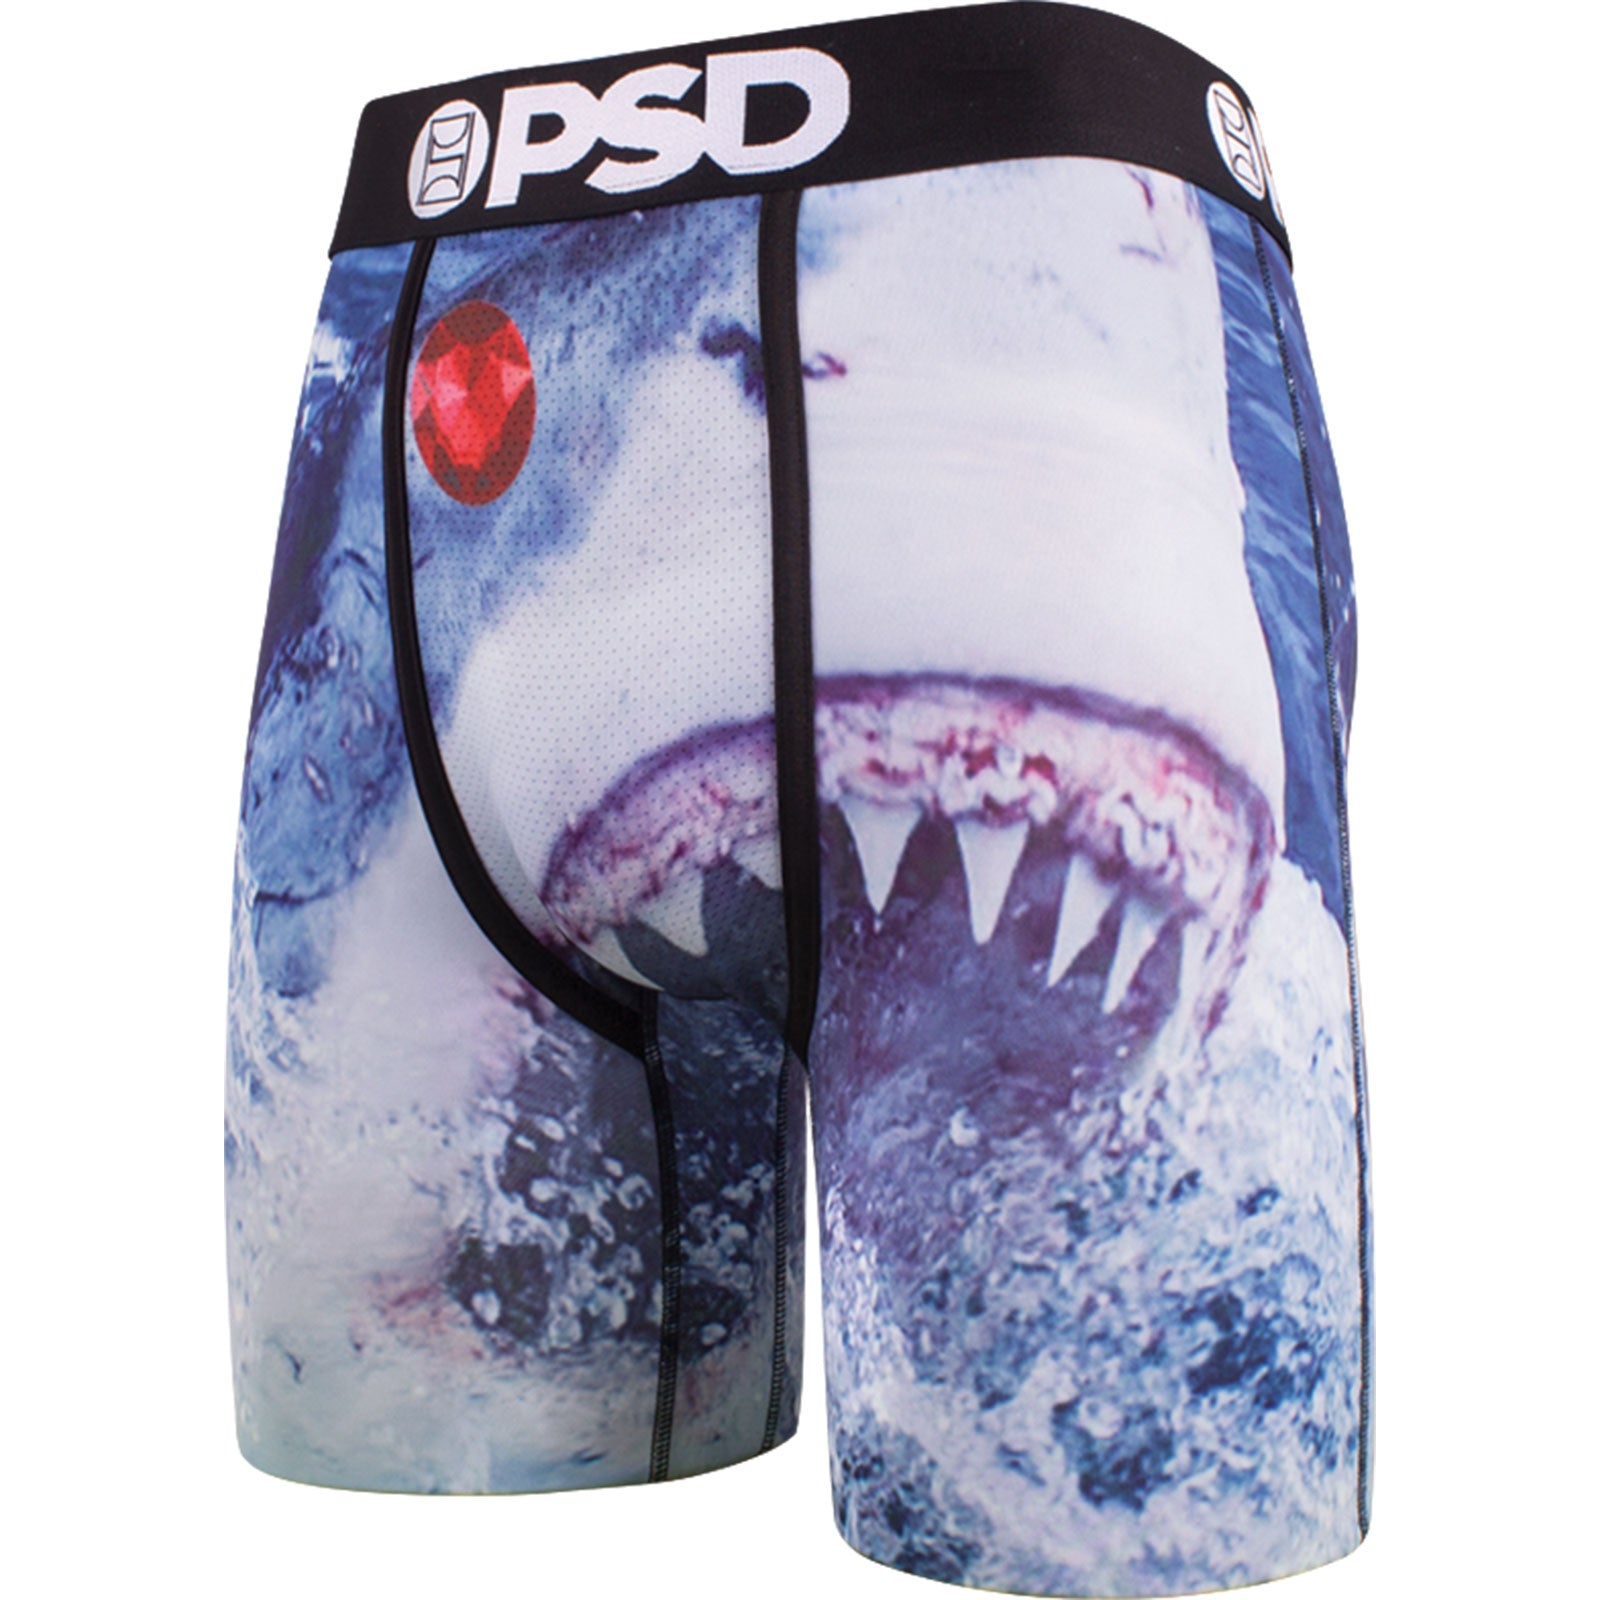 PSD Magnum All Over Boy Shorts Women's Bottom Underwear (Refurbished, –